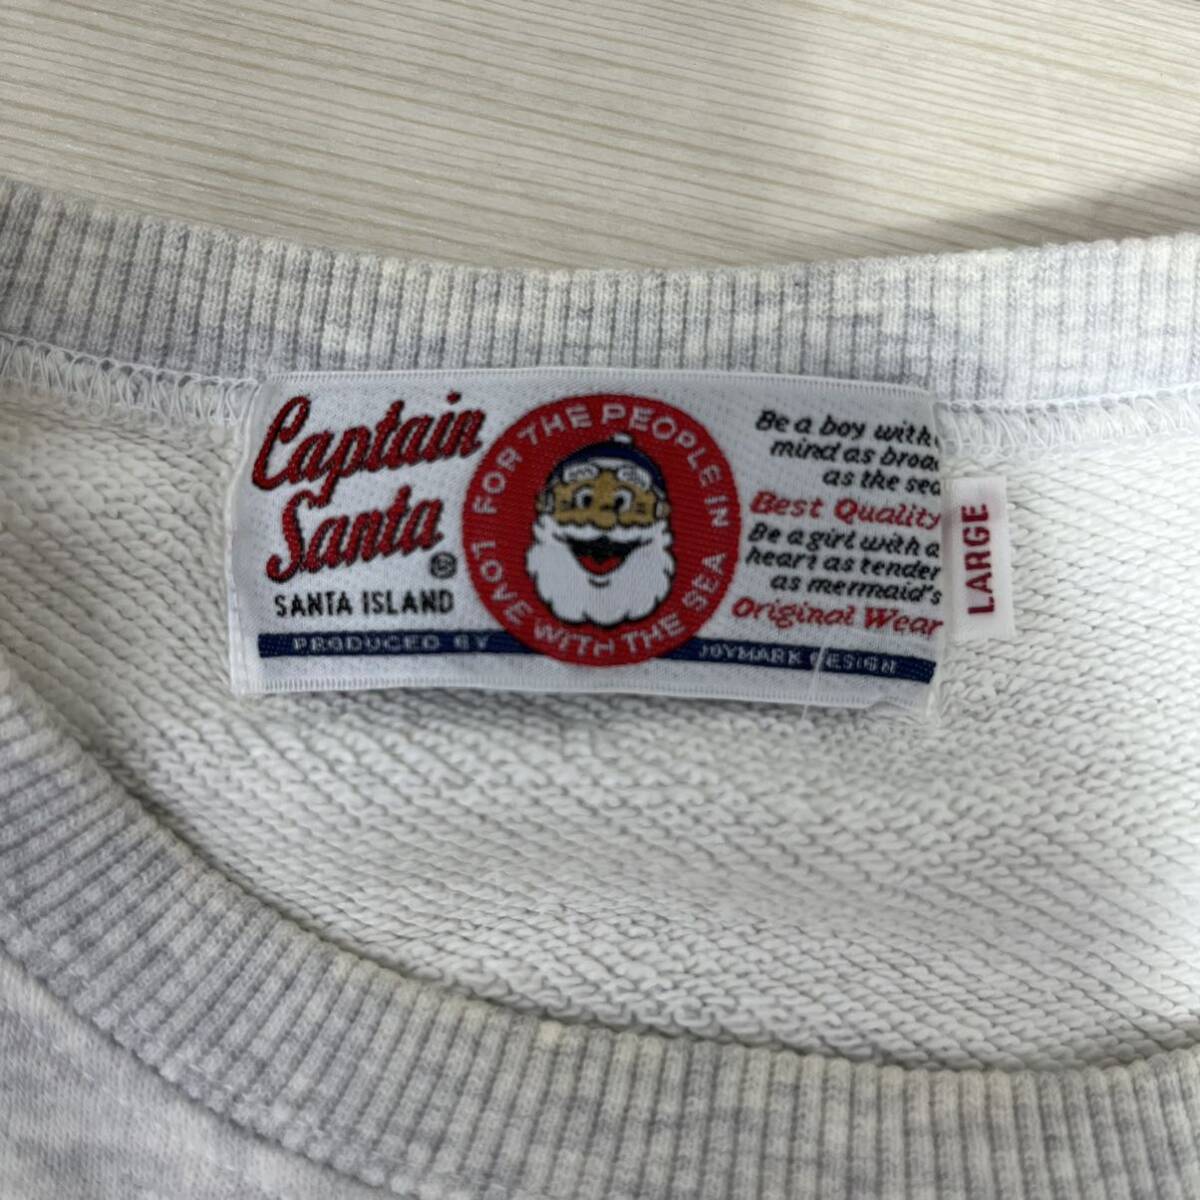 M#② CAPTAIN SANTA Captain Santa мужской тренировочный футболка белый серый L размер tops Vintage 90s б/у одежда принт 